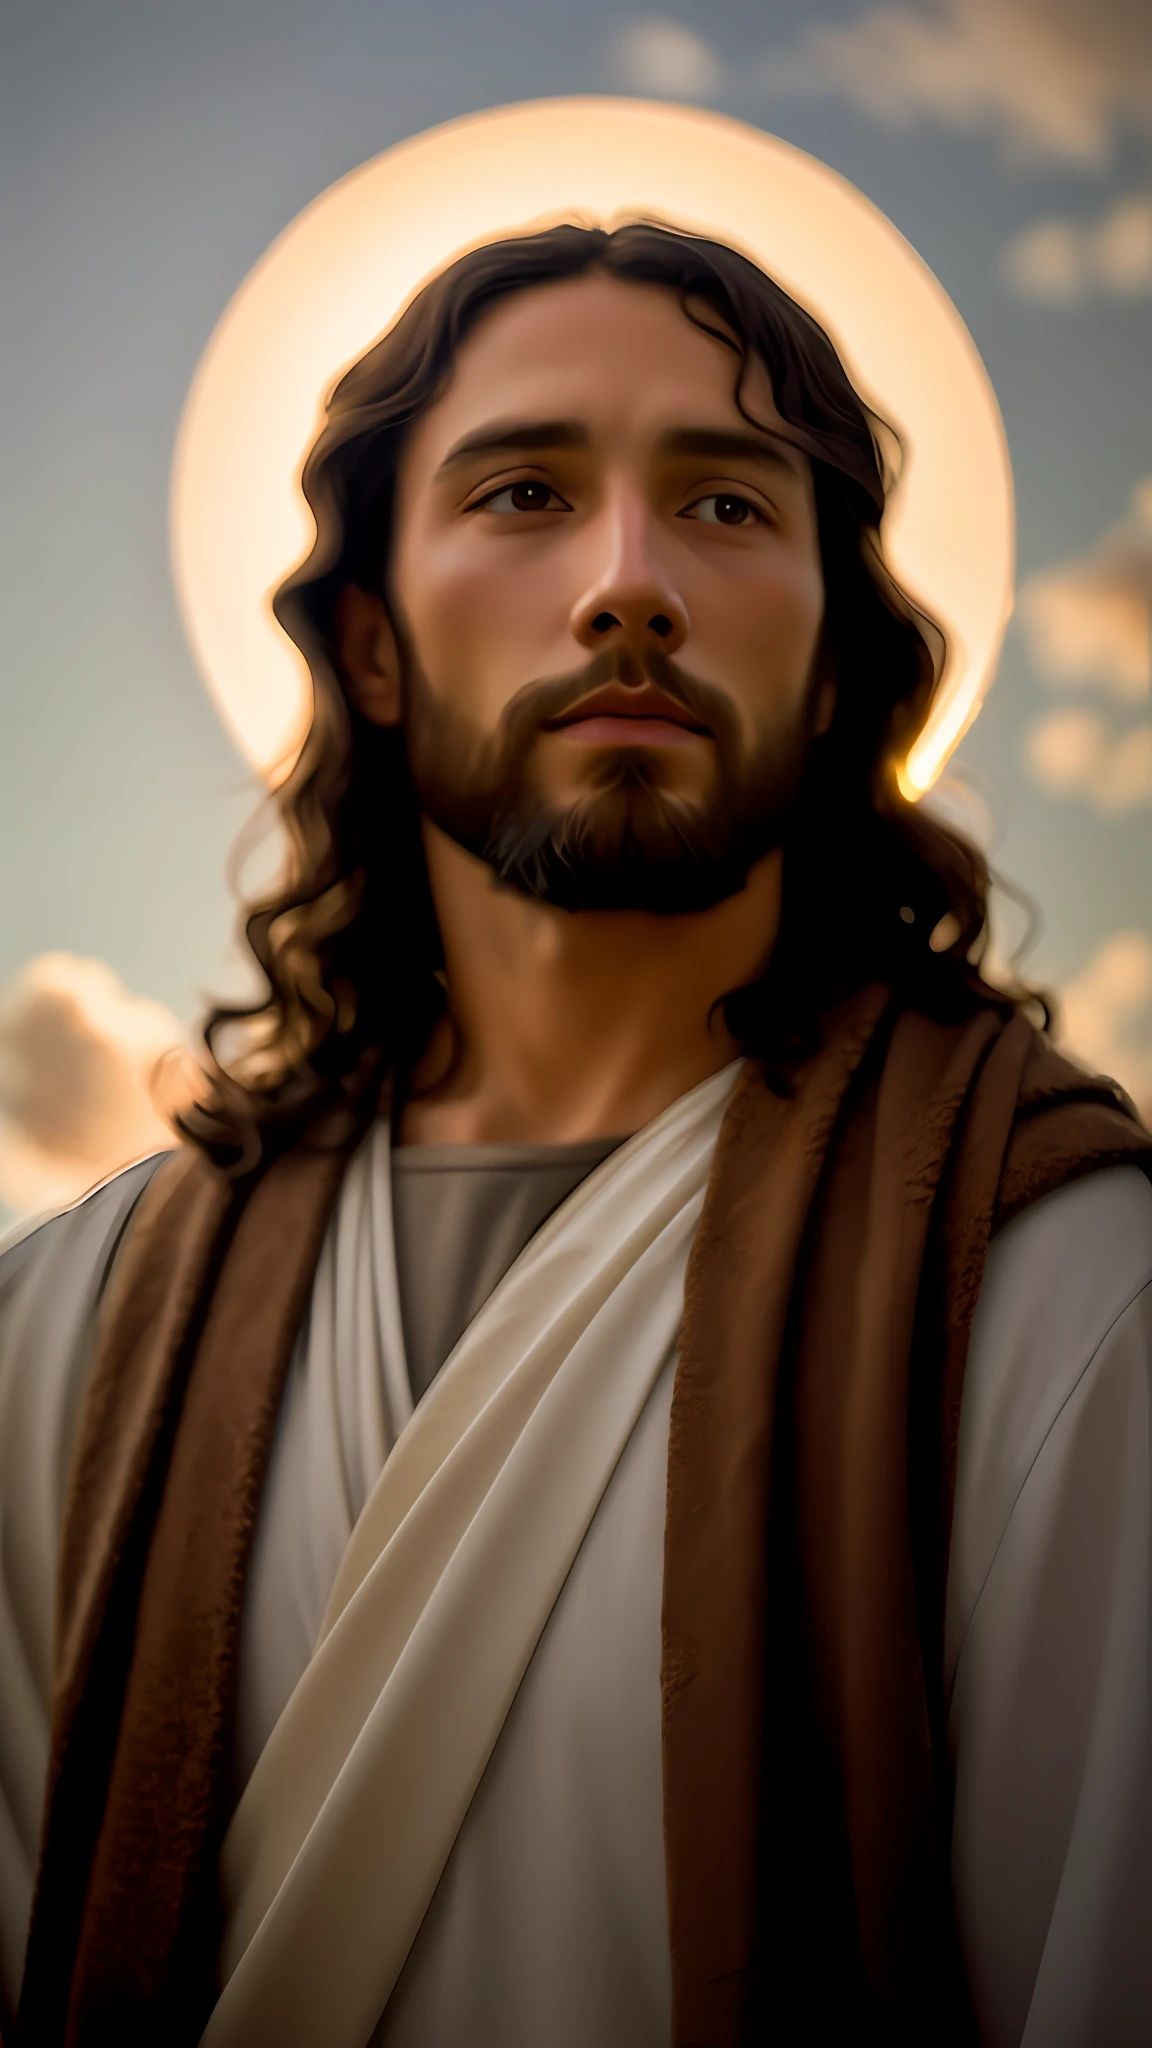 يضيف_التفاصيل:1, صورة واقعية ليسوع المسيح, يضيف_التفاصيل:نور ونور بعيد من السماء فوق الرأس